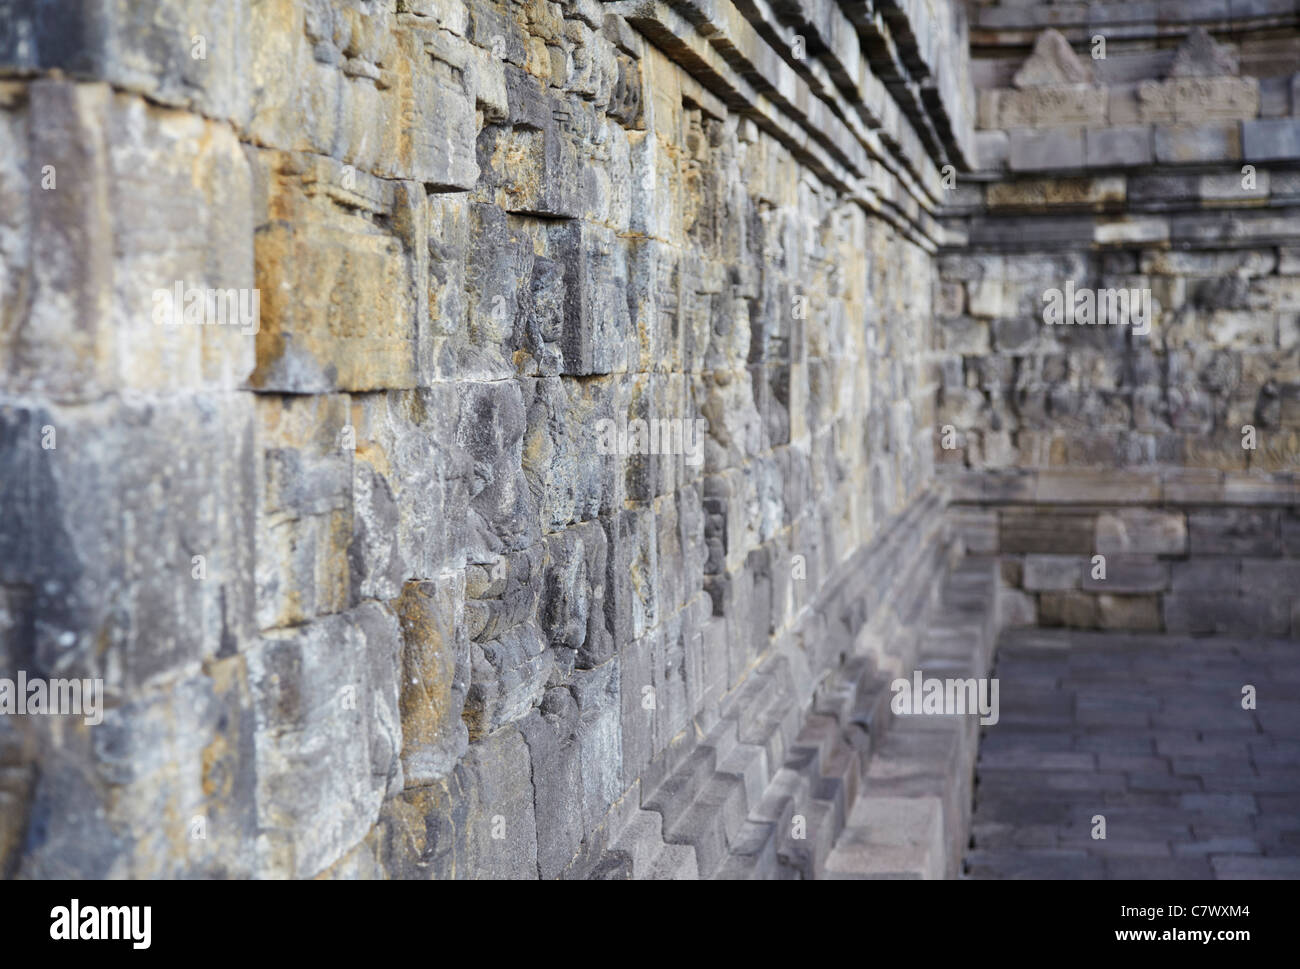 Bas-reliefs, Borobudur (Site du patrimoine mondial de l'UNESCO), Java, Indonésie Banque D'Images